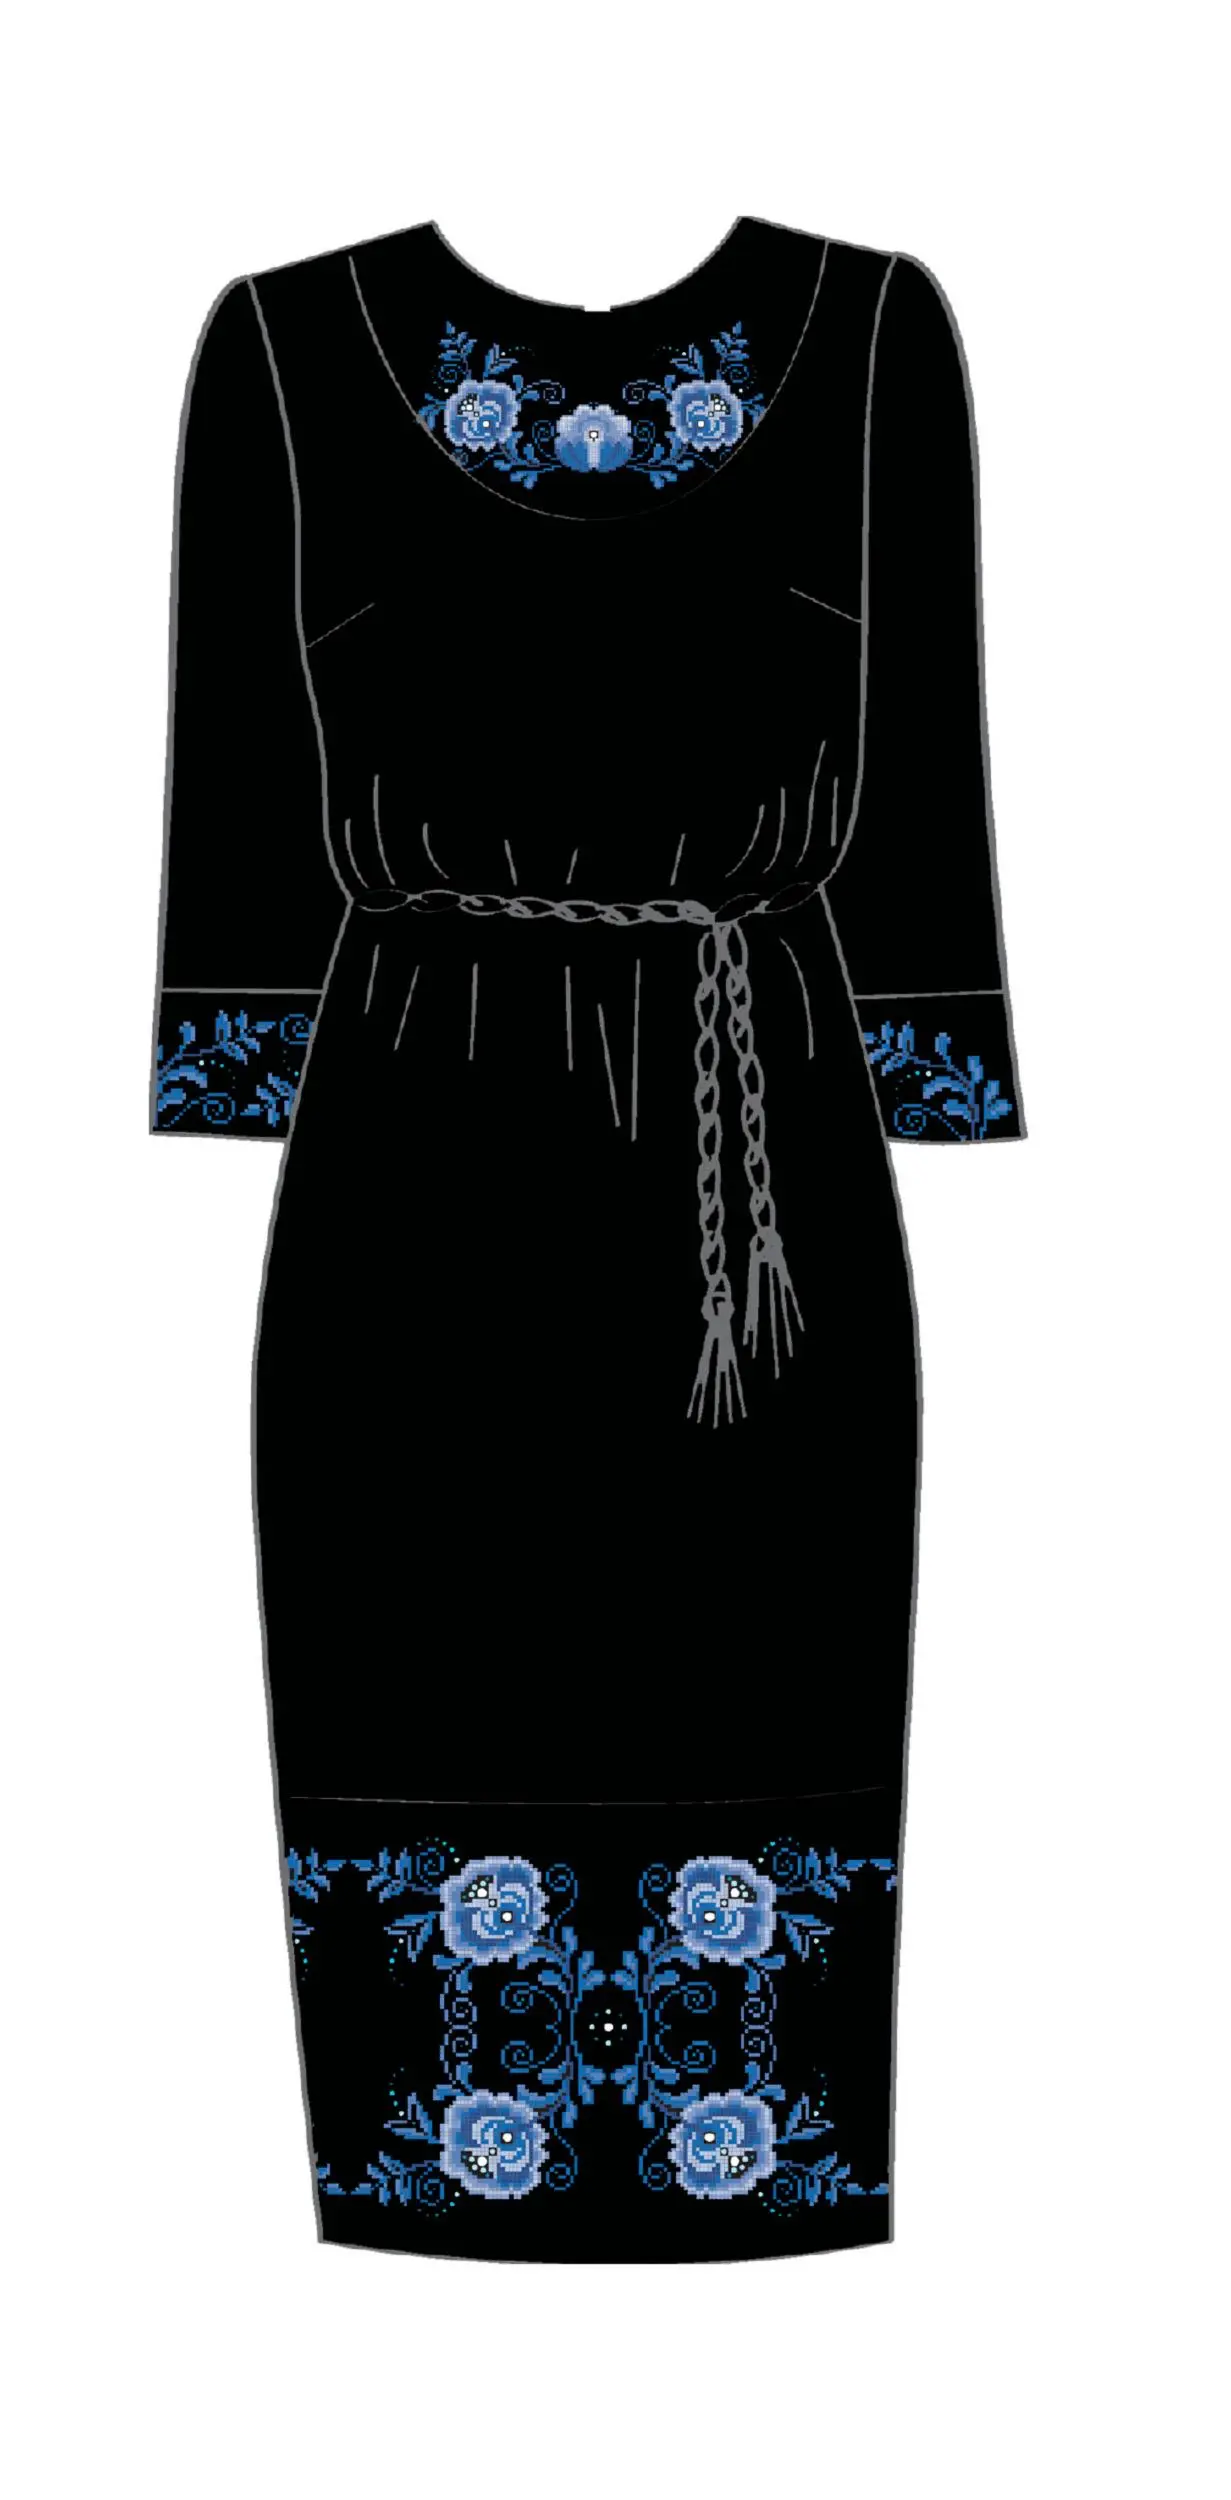 820-14/10 Плаття жіноче з поясом, чорне, розмір 44